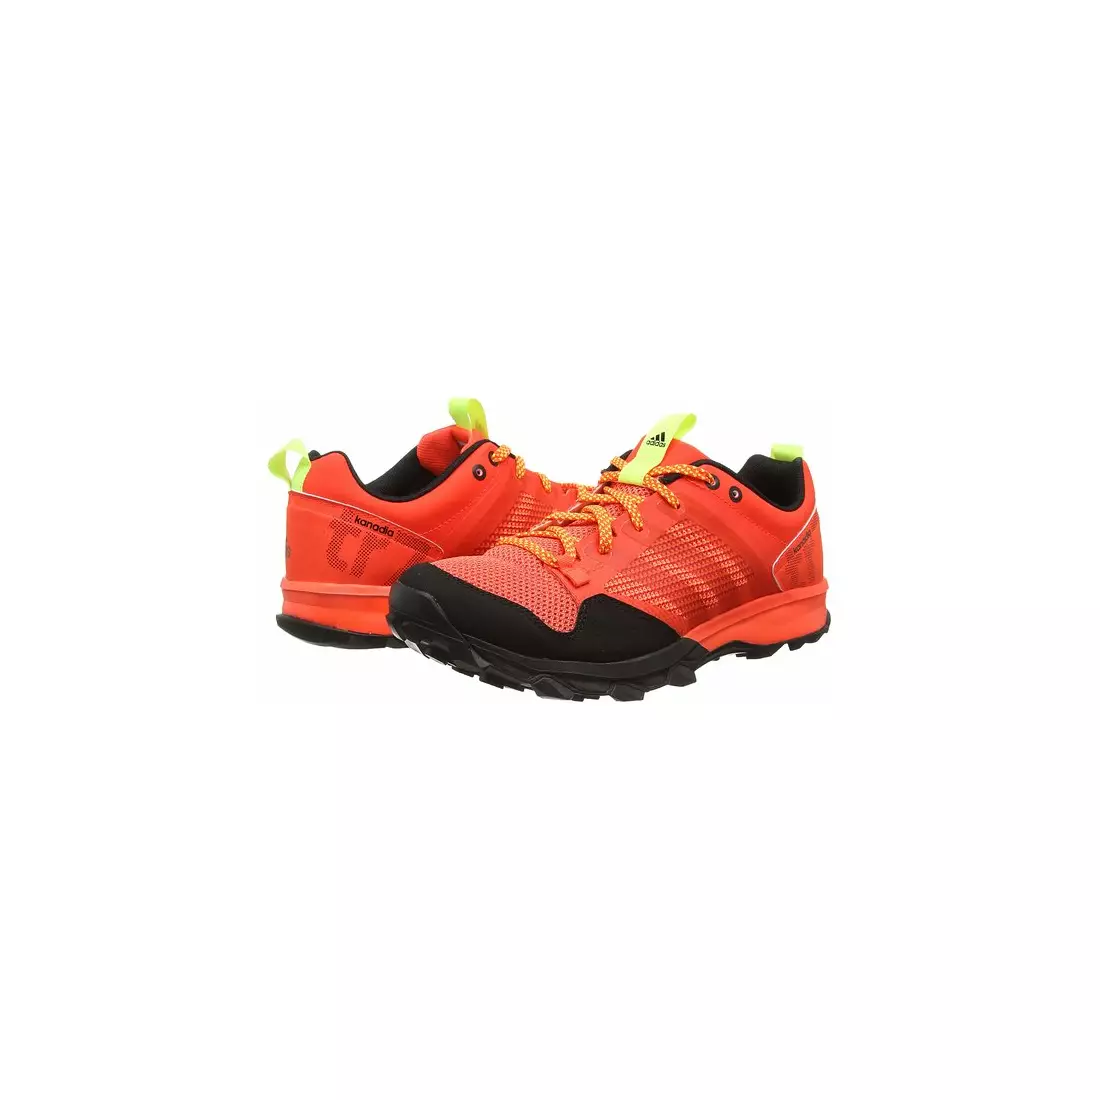 ADIDAS Kanadia 7 tr m B33625 men's running shoes